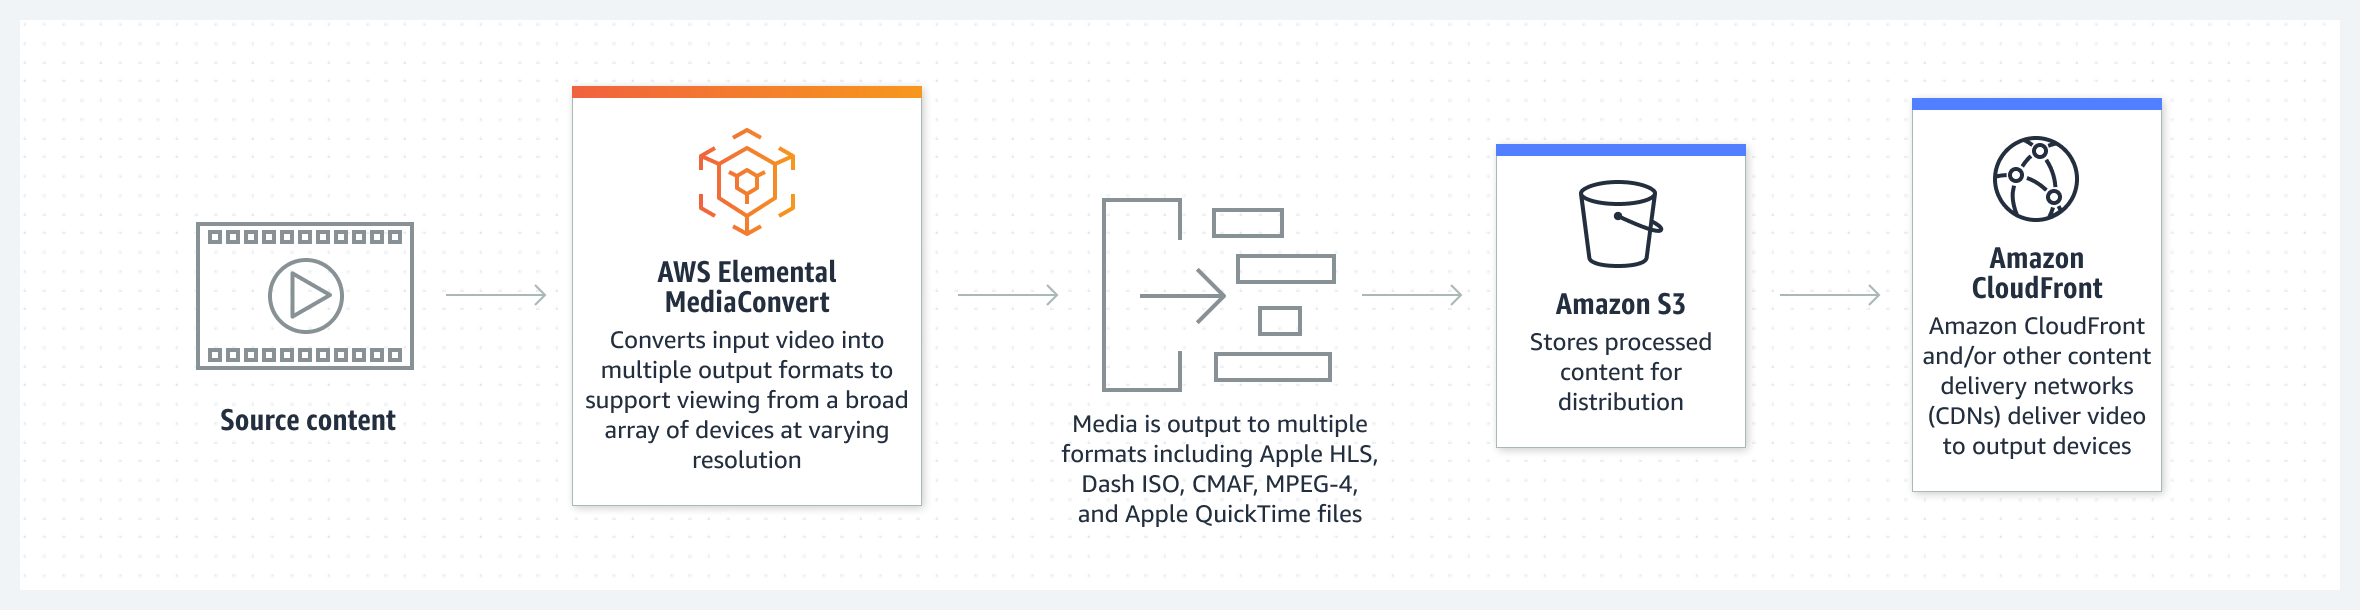 На схеме показано, как AWS Elemental MediaConvert преобразует исходные видеоматериалы для их передачи в нескольких форматах.